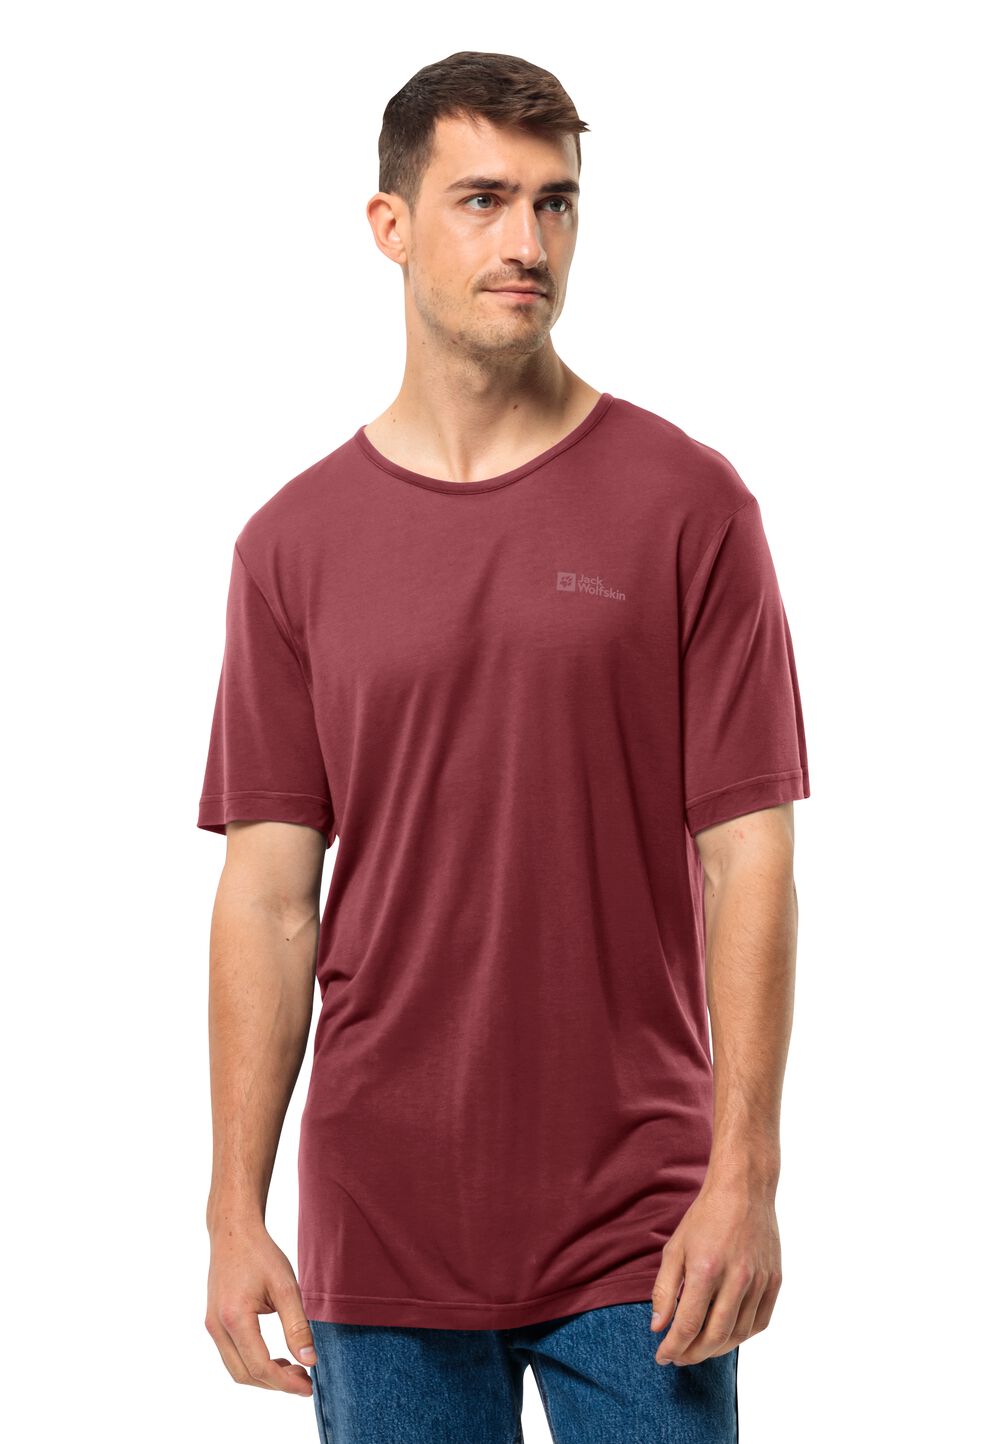 Jack Wolfskin Mola T-Shirt Men Functioneel shirt Heren XL purper deep ruby